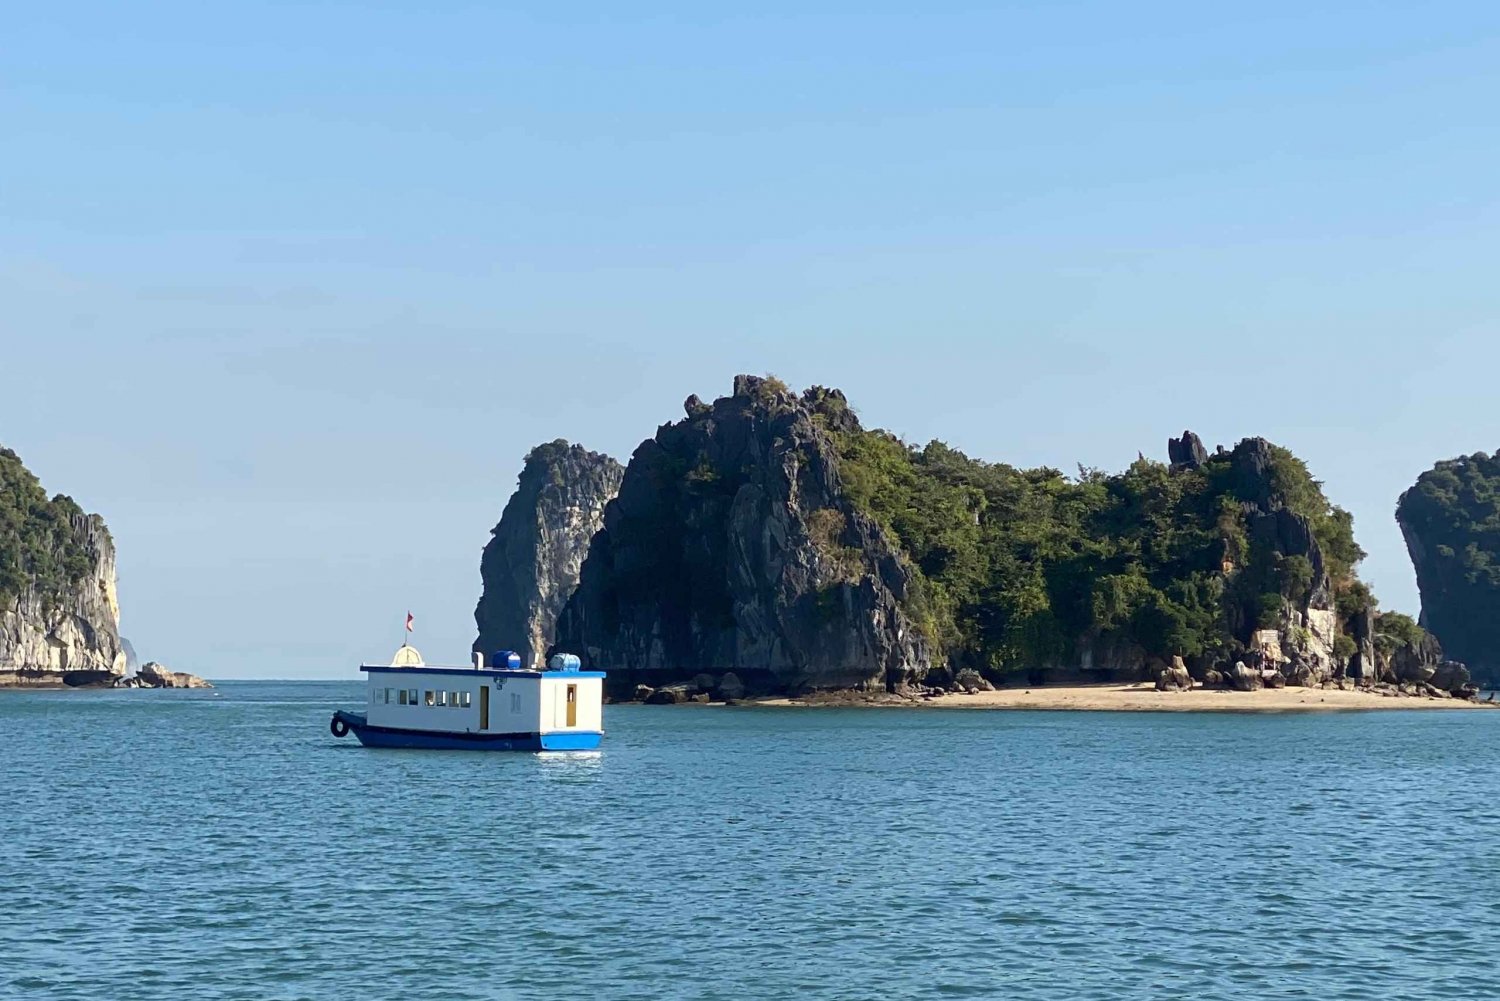 Pół dnia w zatoce Lan Ha: wycieczka łodzią, spływ kajakowy, nurkowanie z rurką